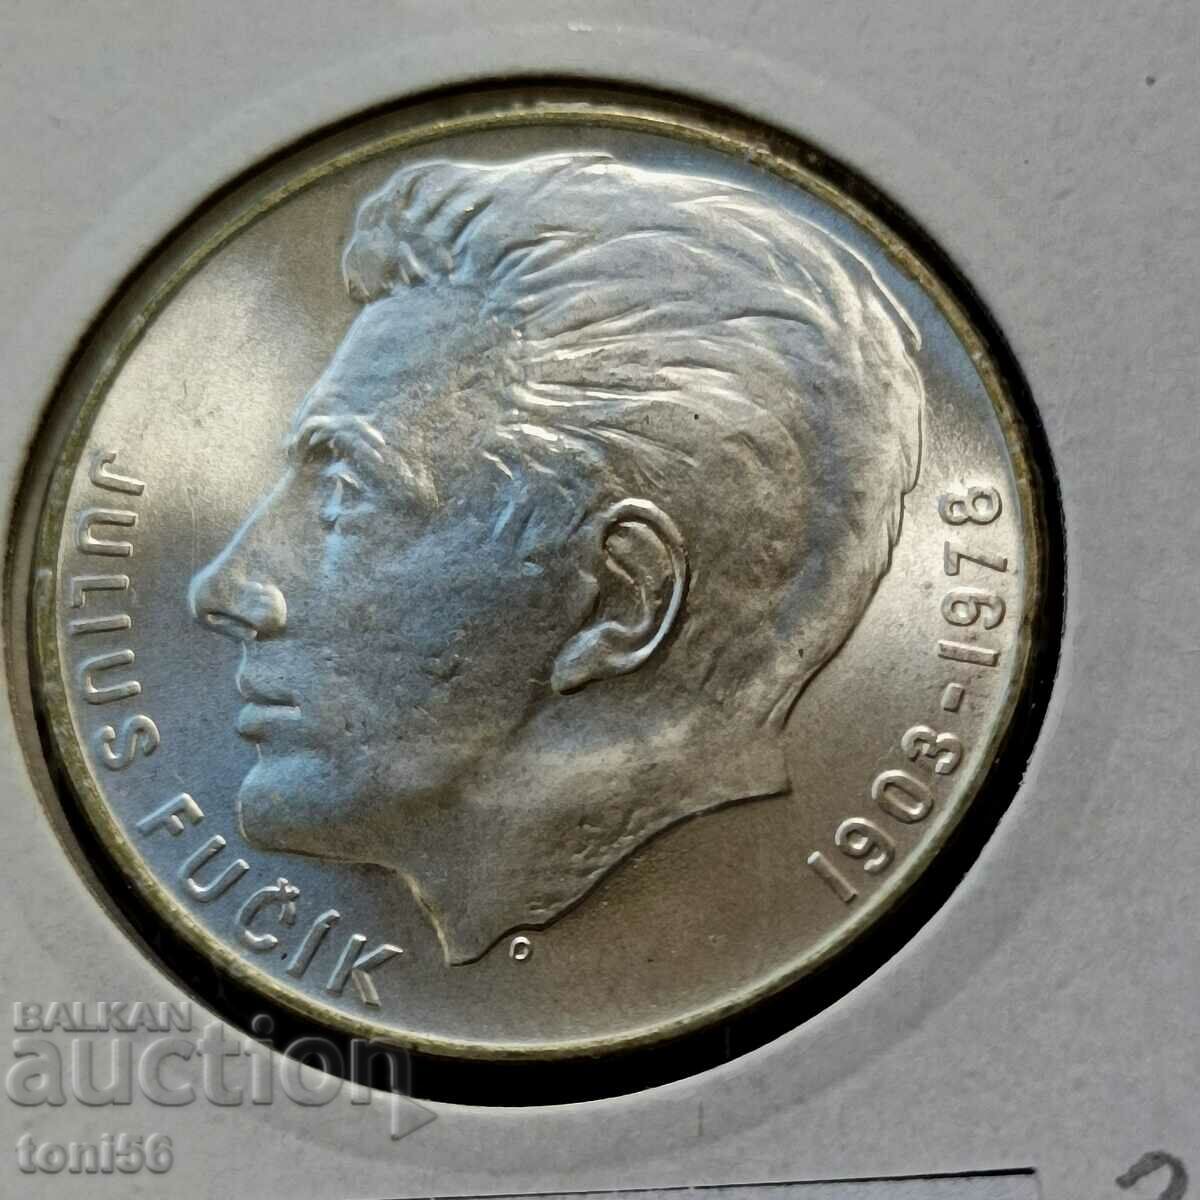 Czechoslovakia 100 kroner 1978 UNC - Silver